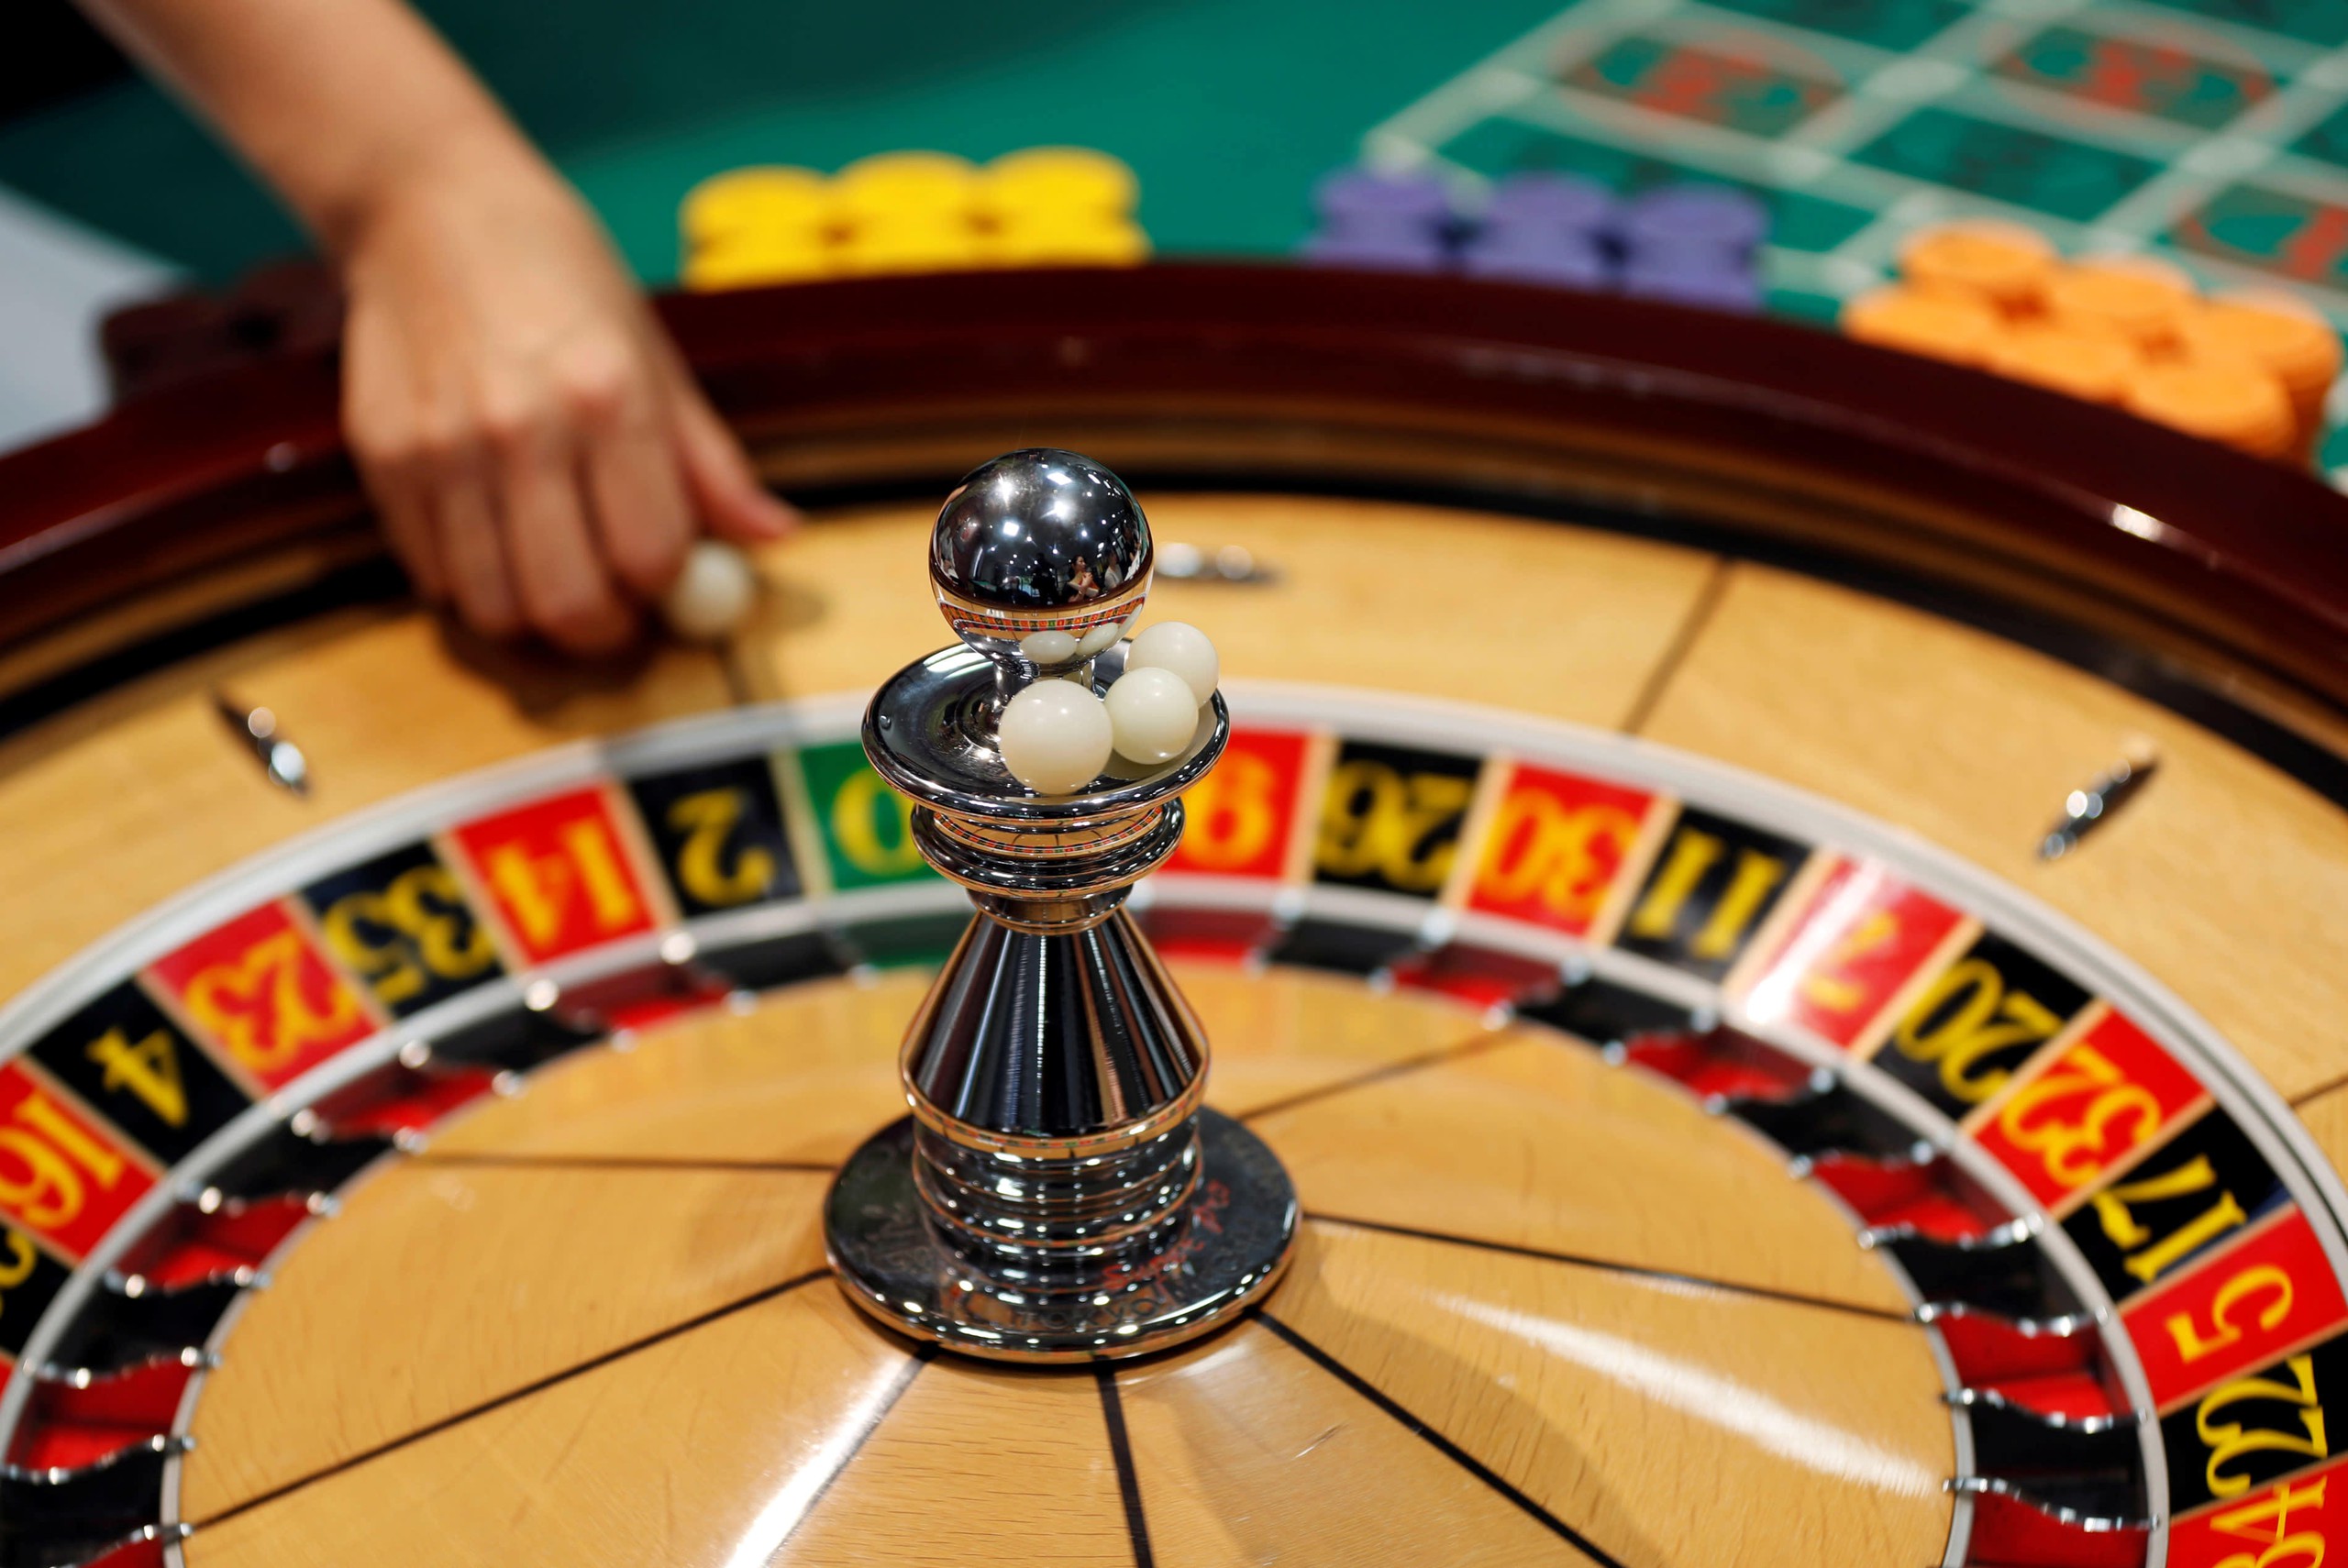 Hàng loạt doanh nghiệp xổ số, casino nằm trong "tầm ngắm" của thanh tra Bộ Tài chính- Ảnh 1.